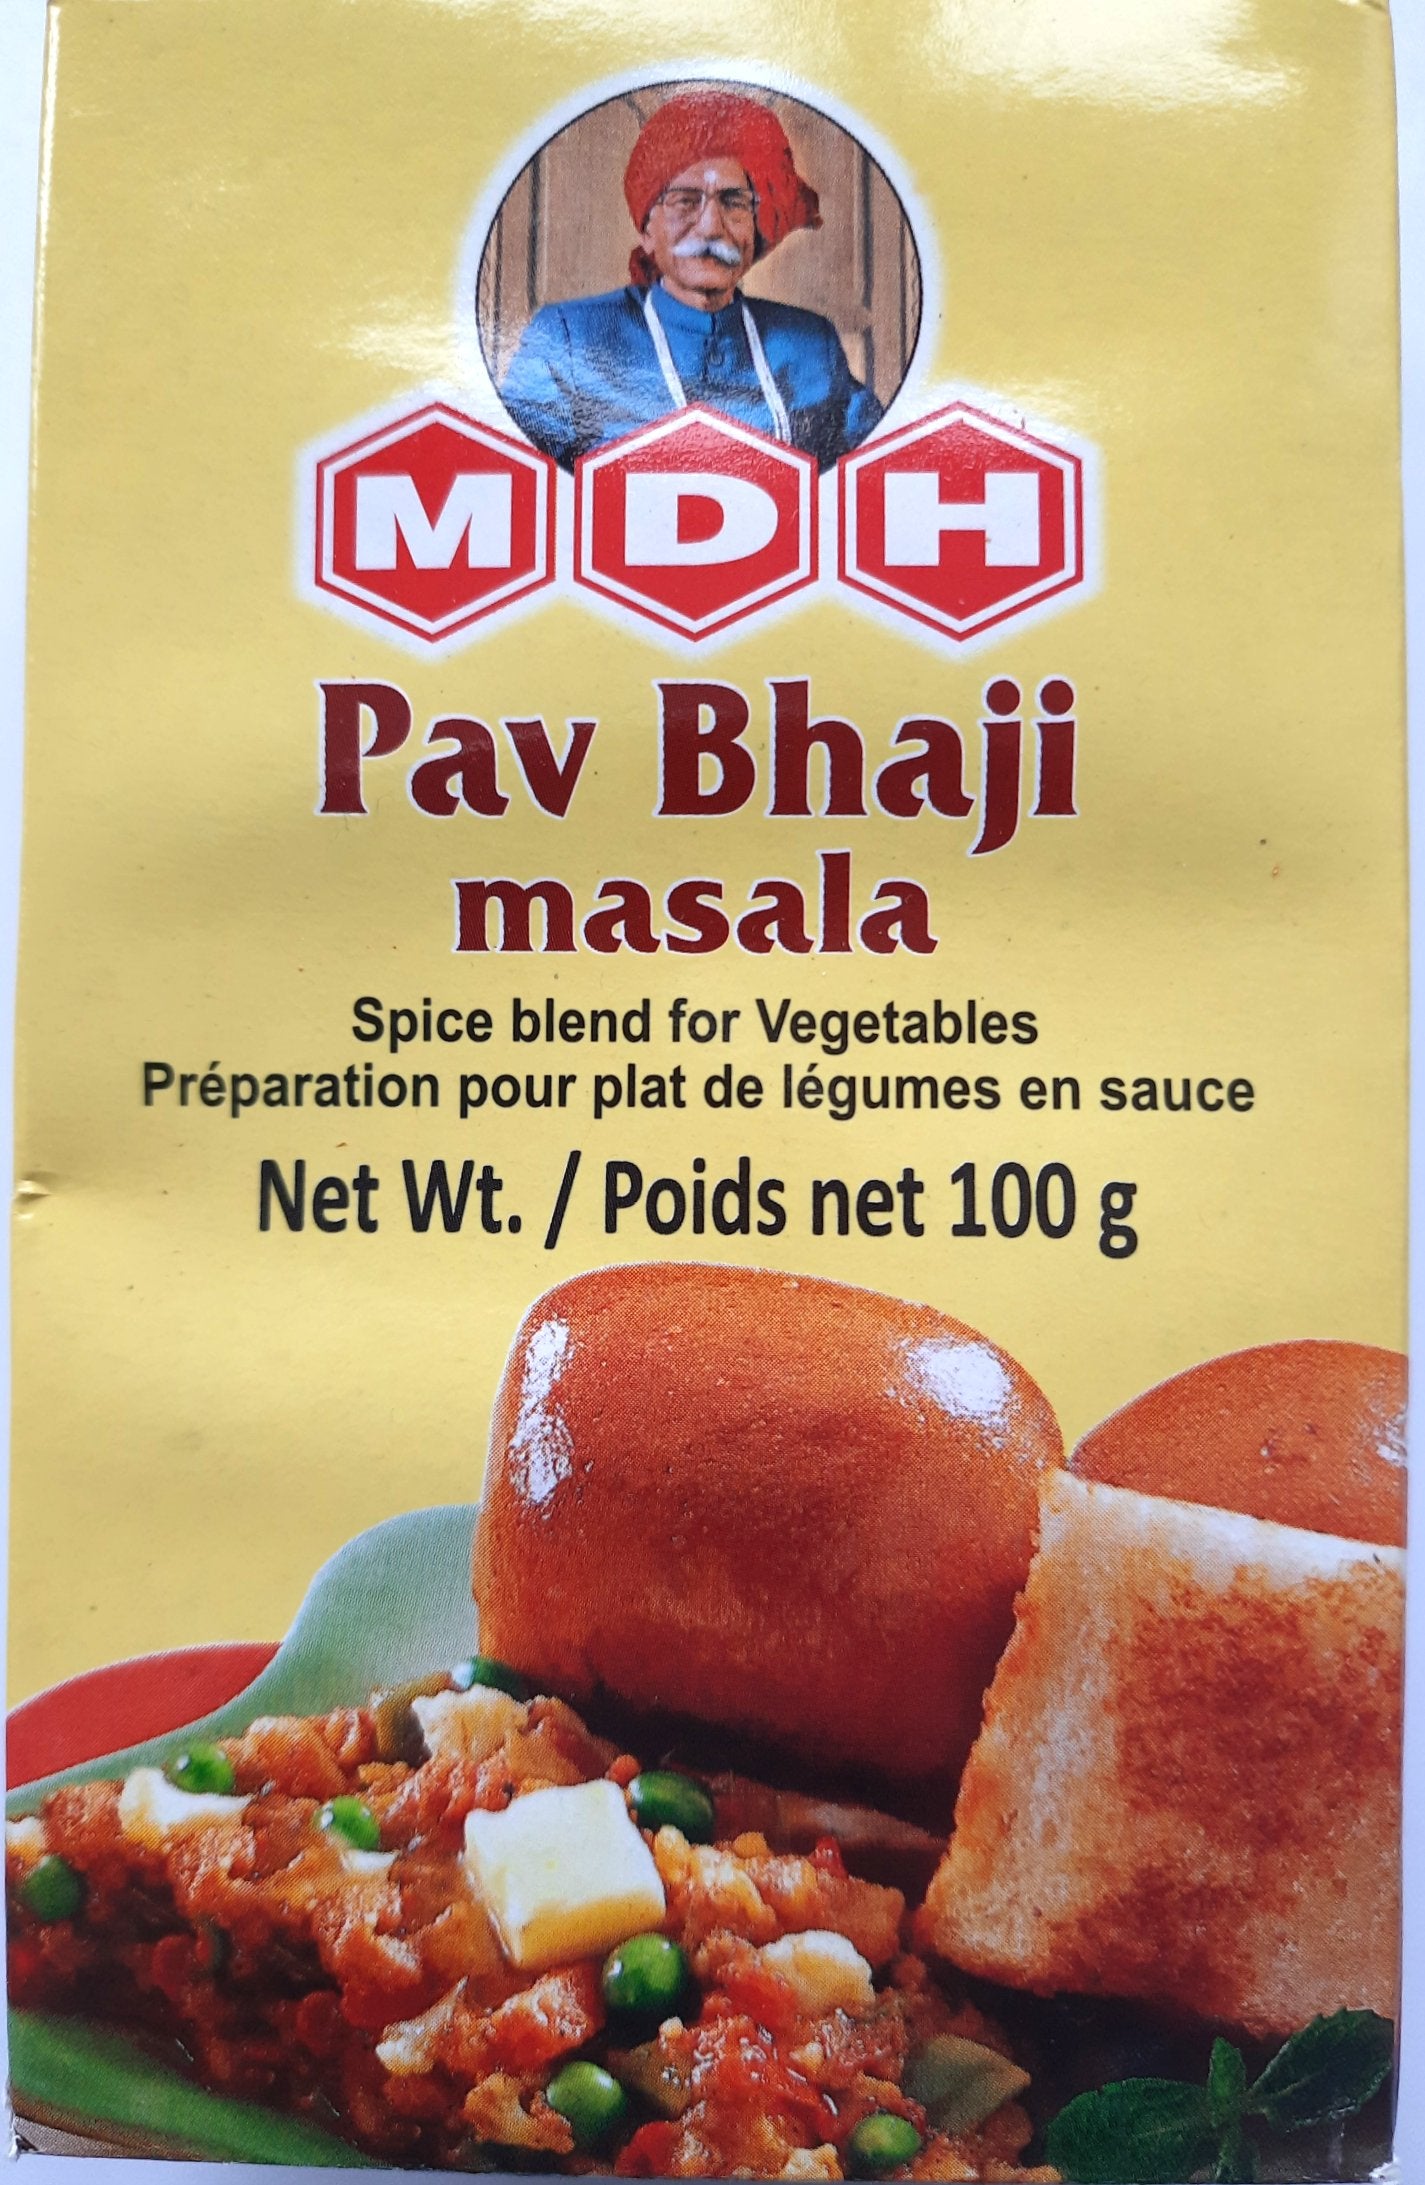 MDH Pav Bhaji Masala 100g - Cestaa Retail